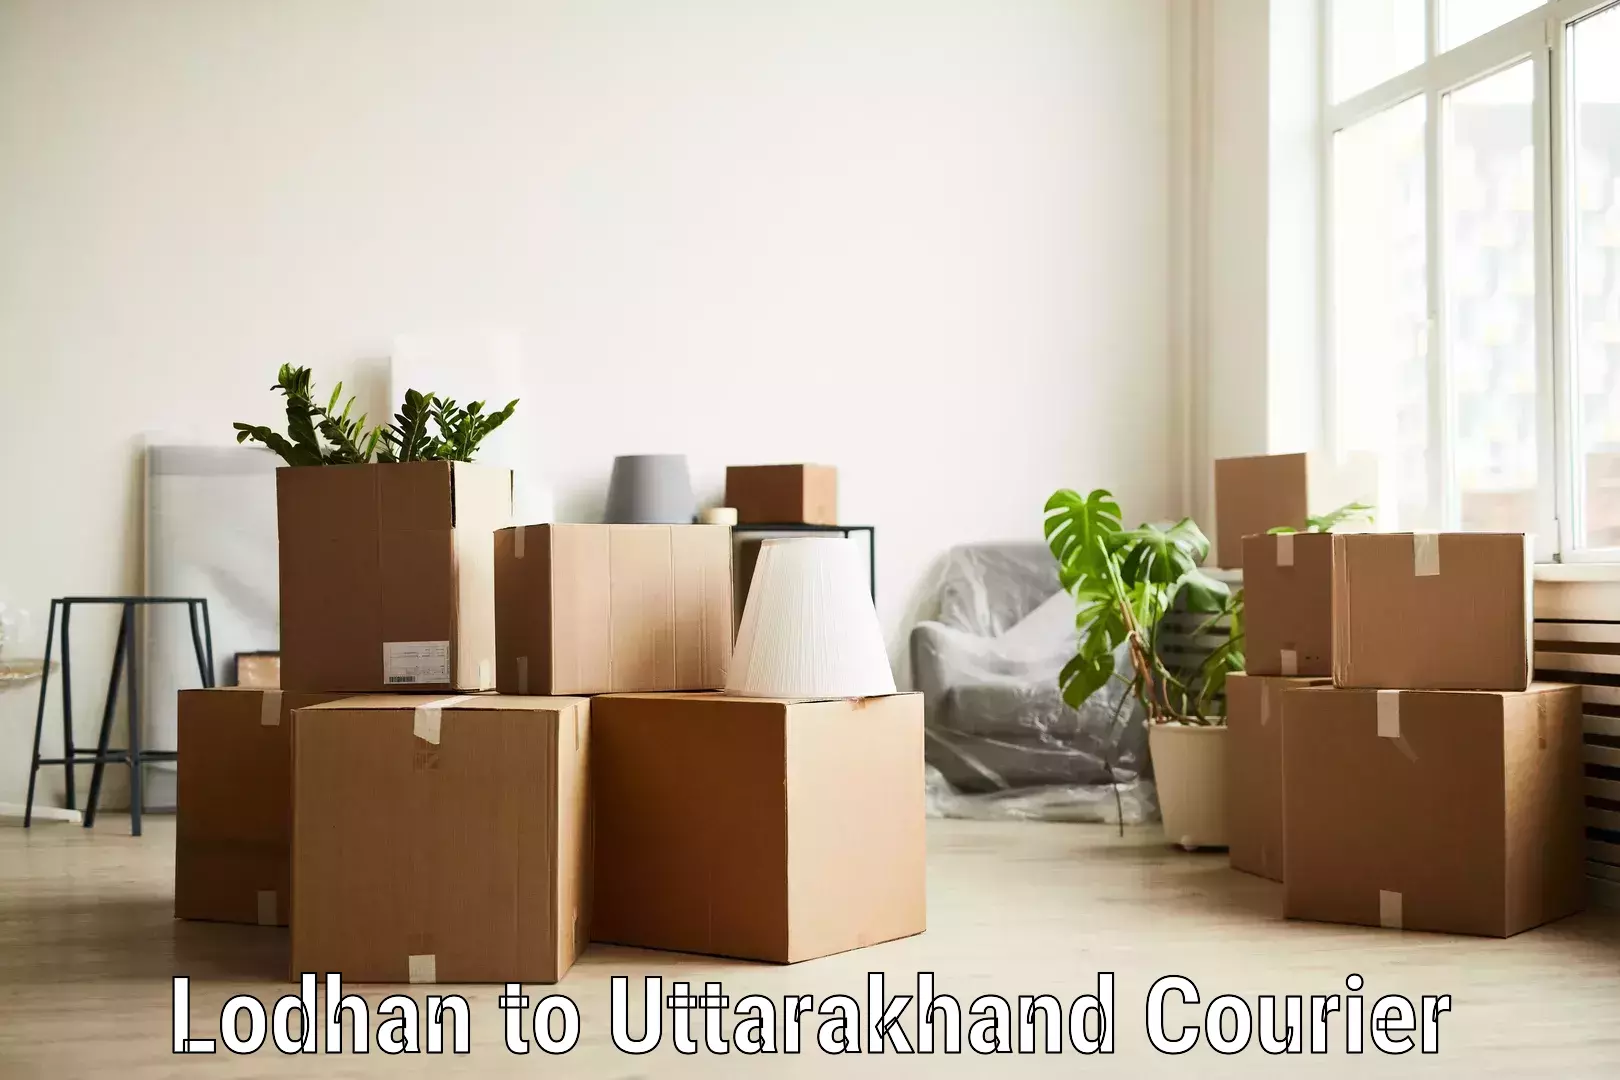 Customer-centric shipping Lodhan to Haridwar